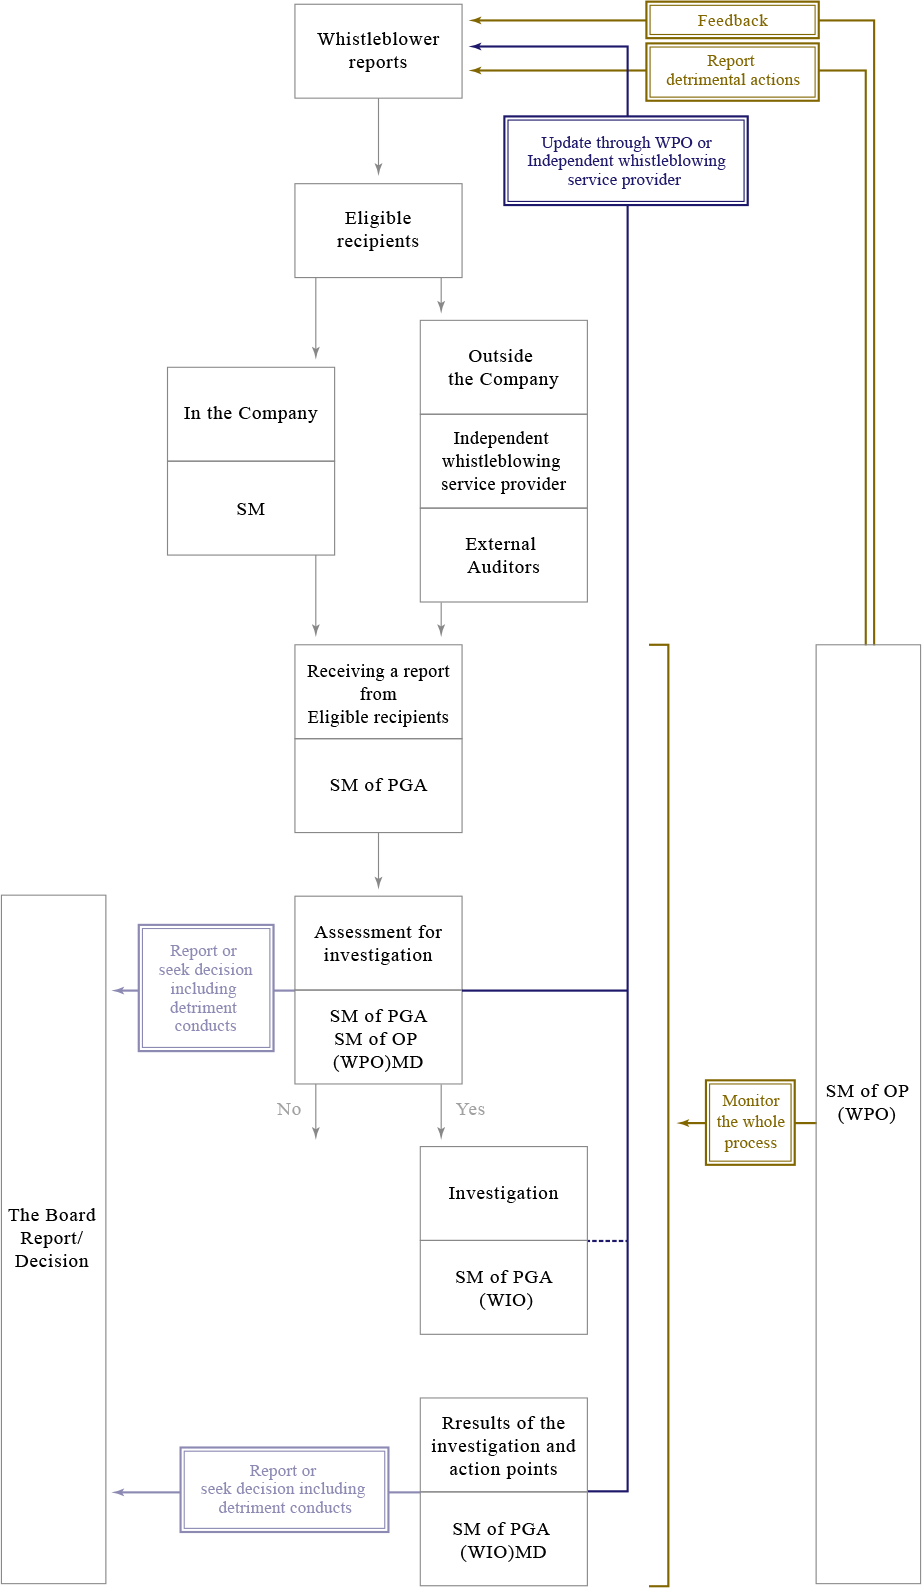 Appendix 1 – Process flow